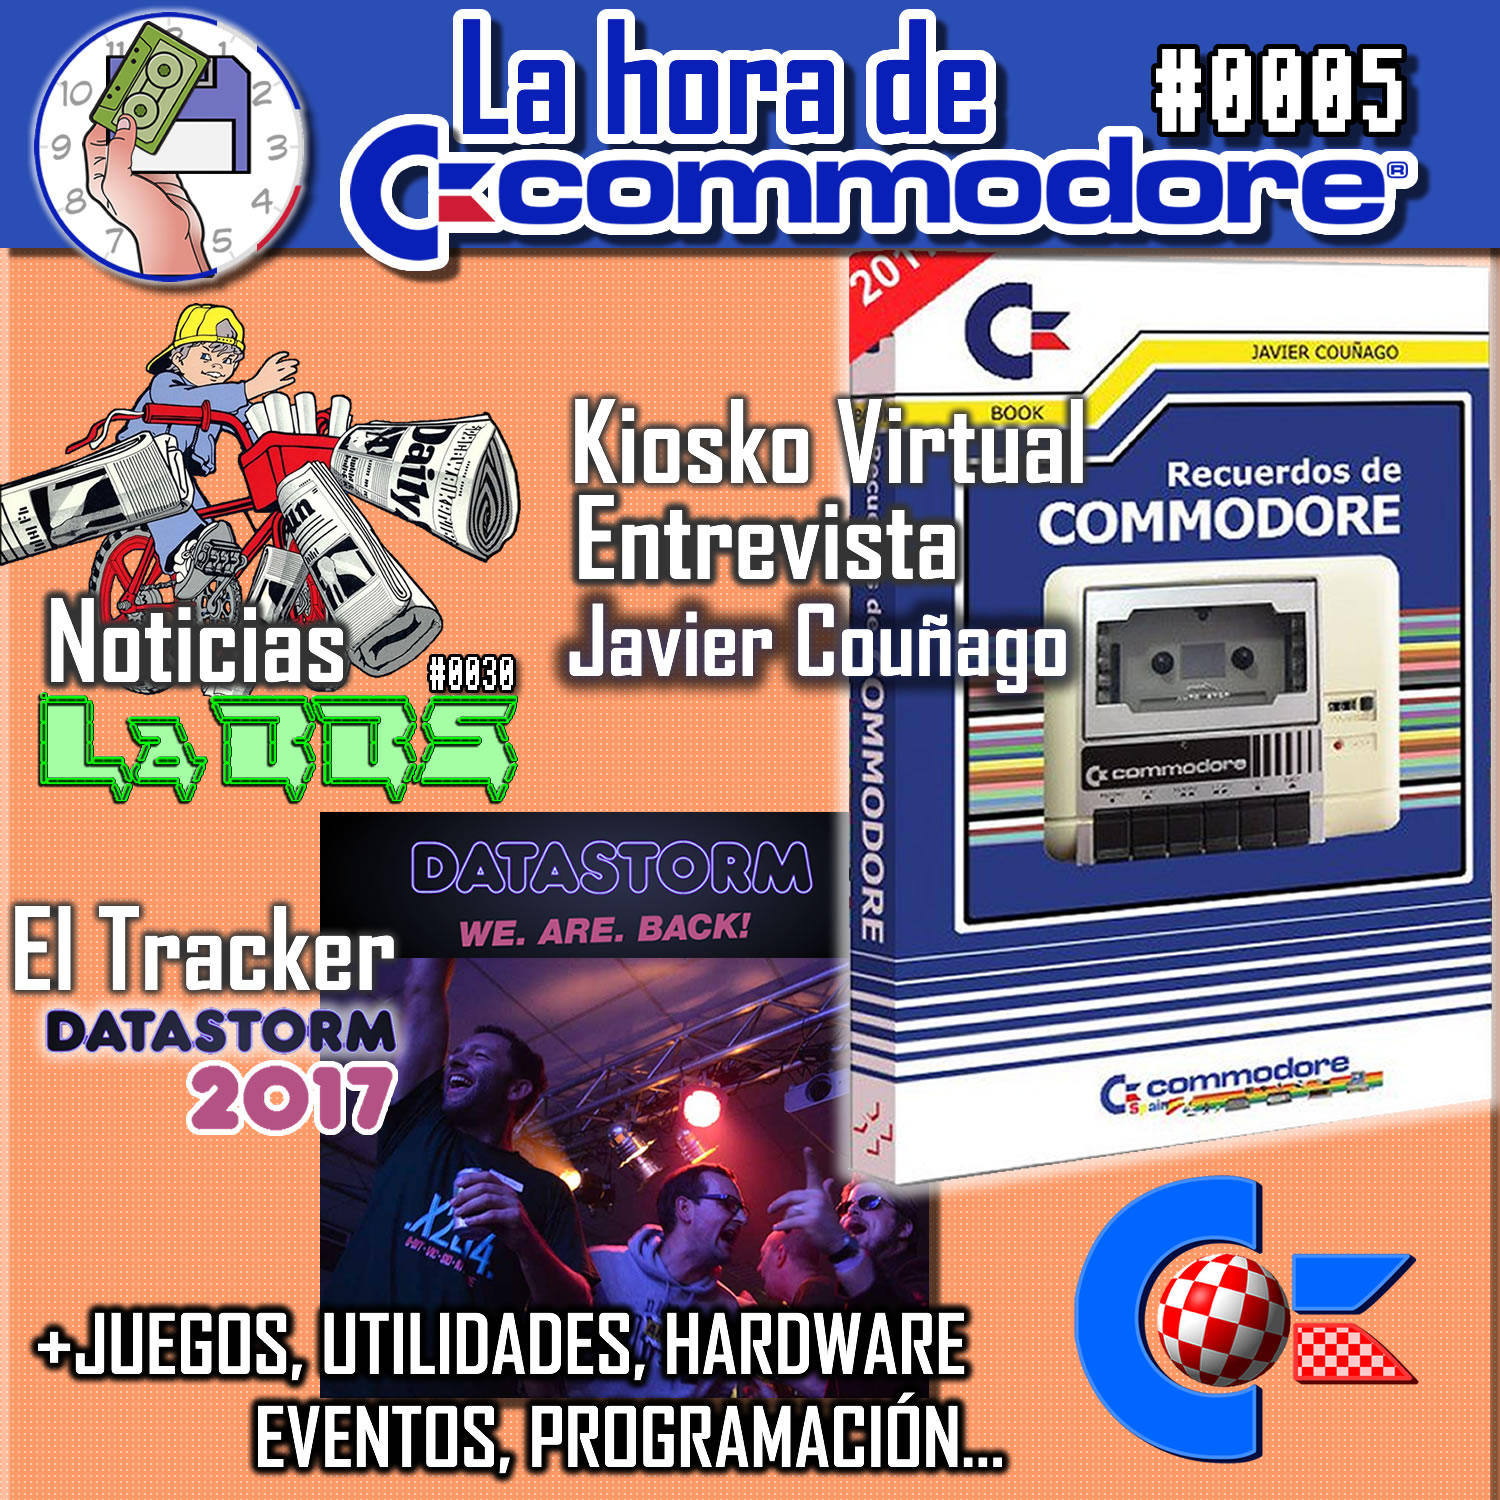 Portada La Hora De Commodore 05